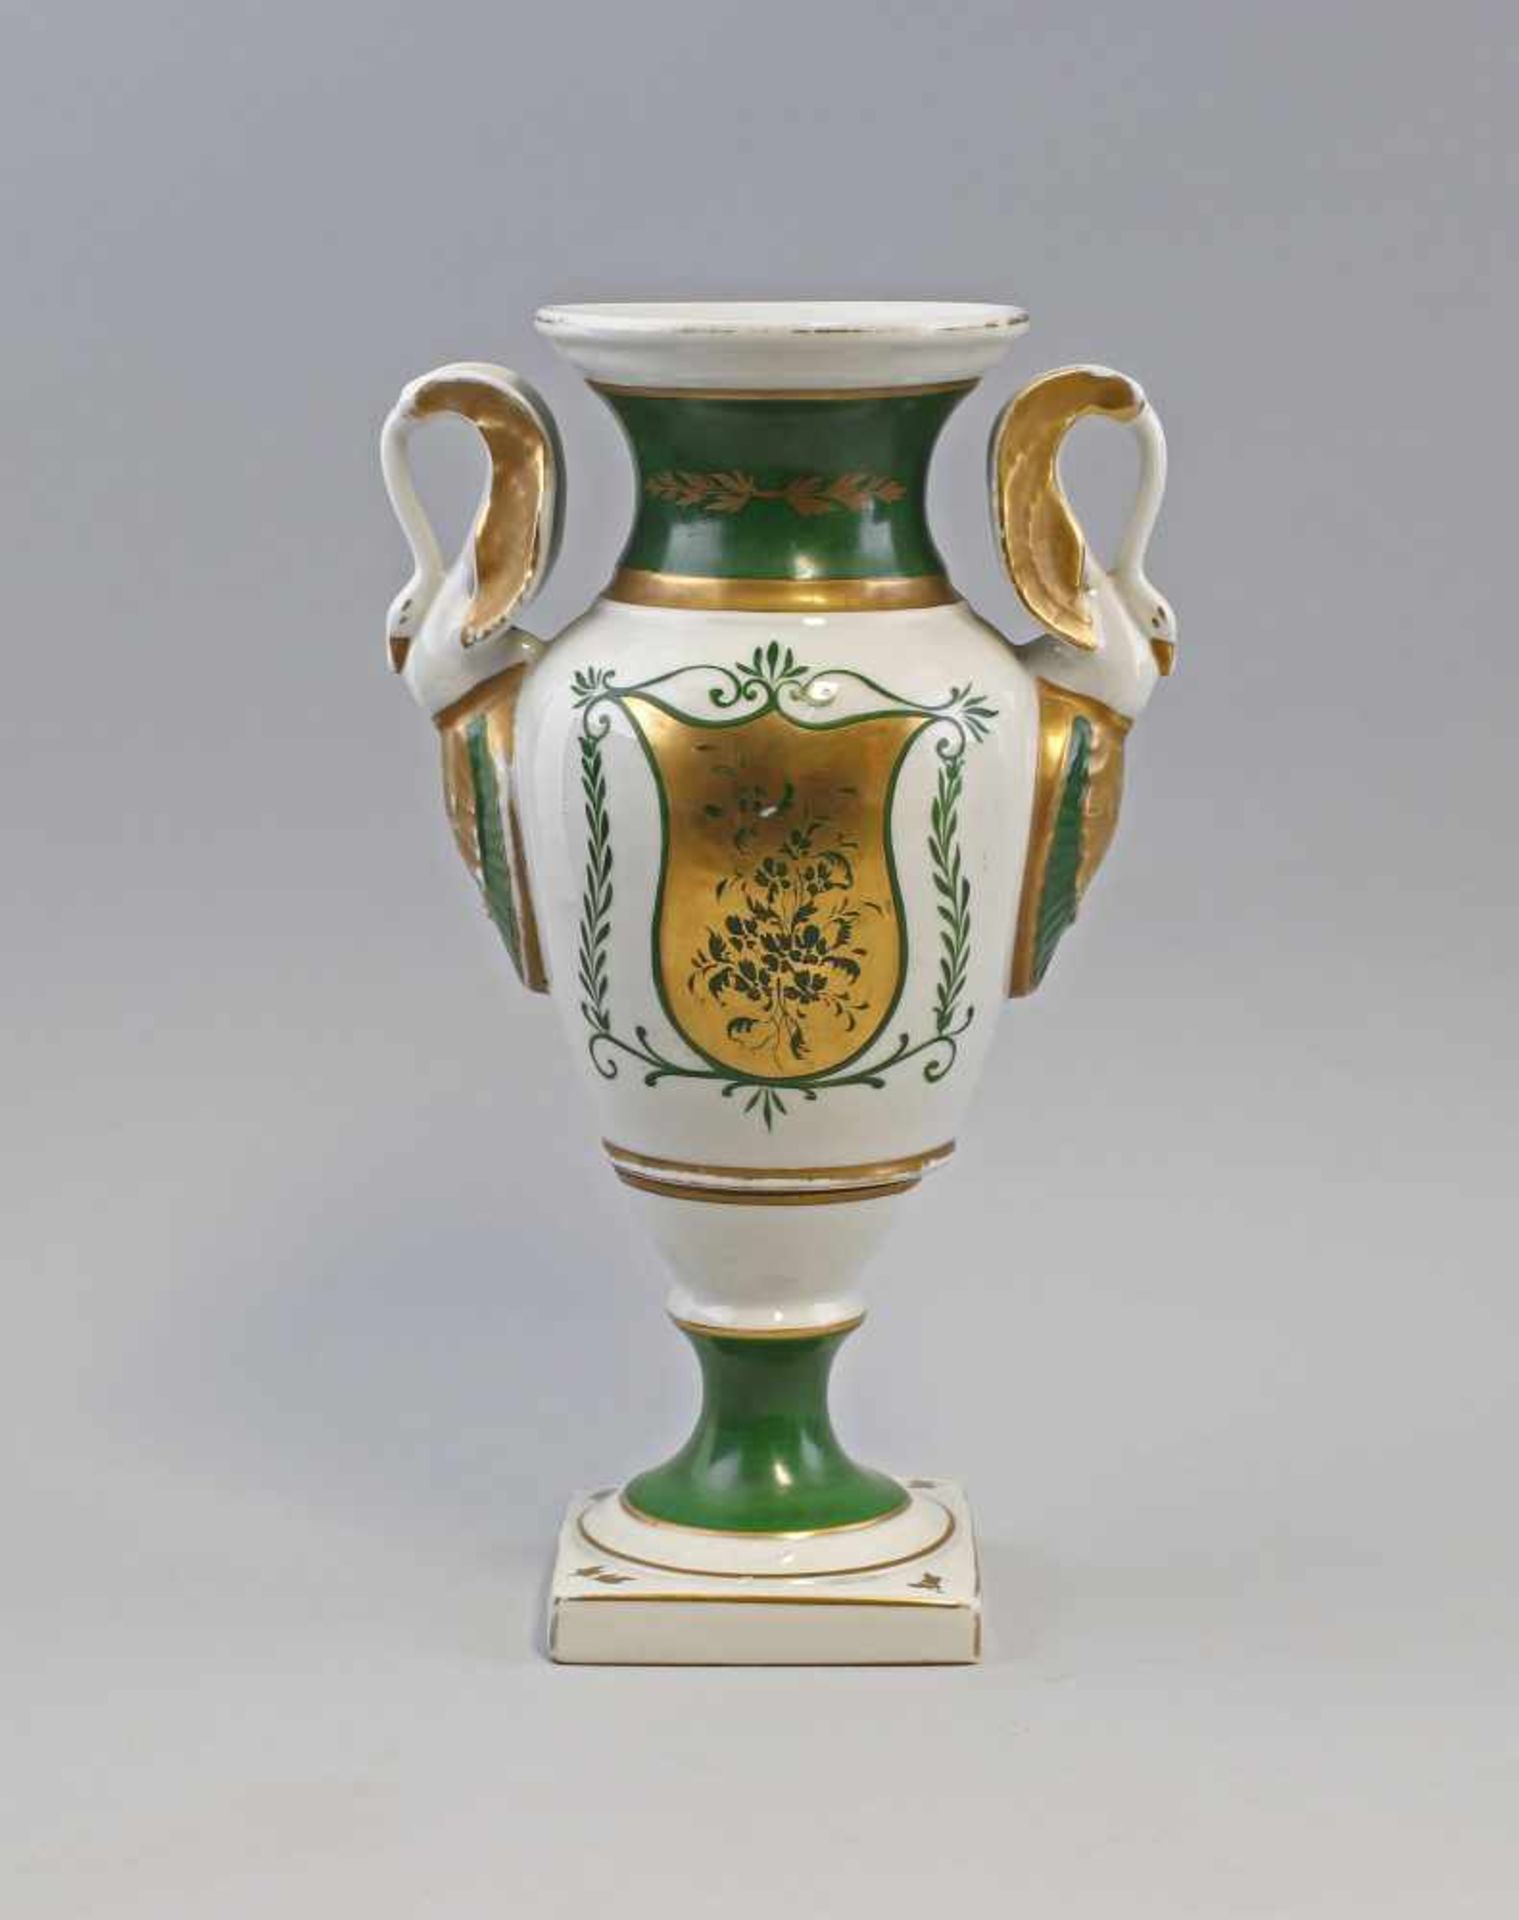 Amphorenvase Schwanenhenkel ungemarkt, wohl 19.Jh., amphorenförmige Vase auf quadratischem Fuß,